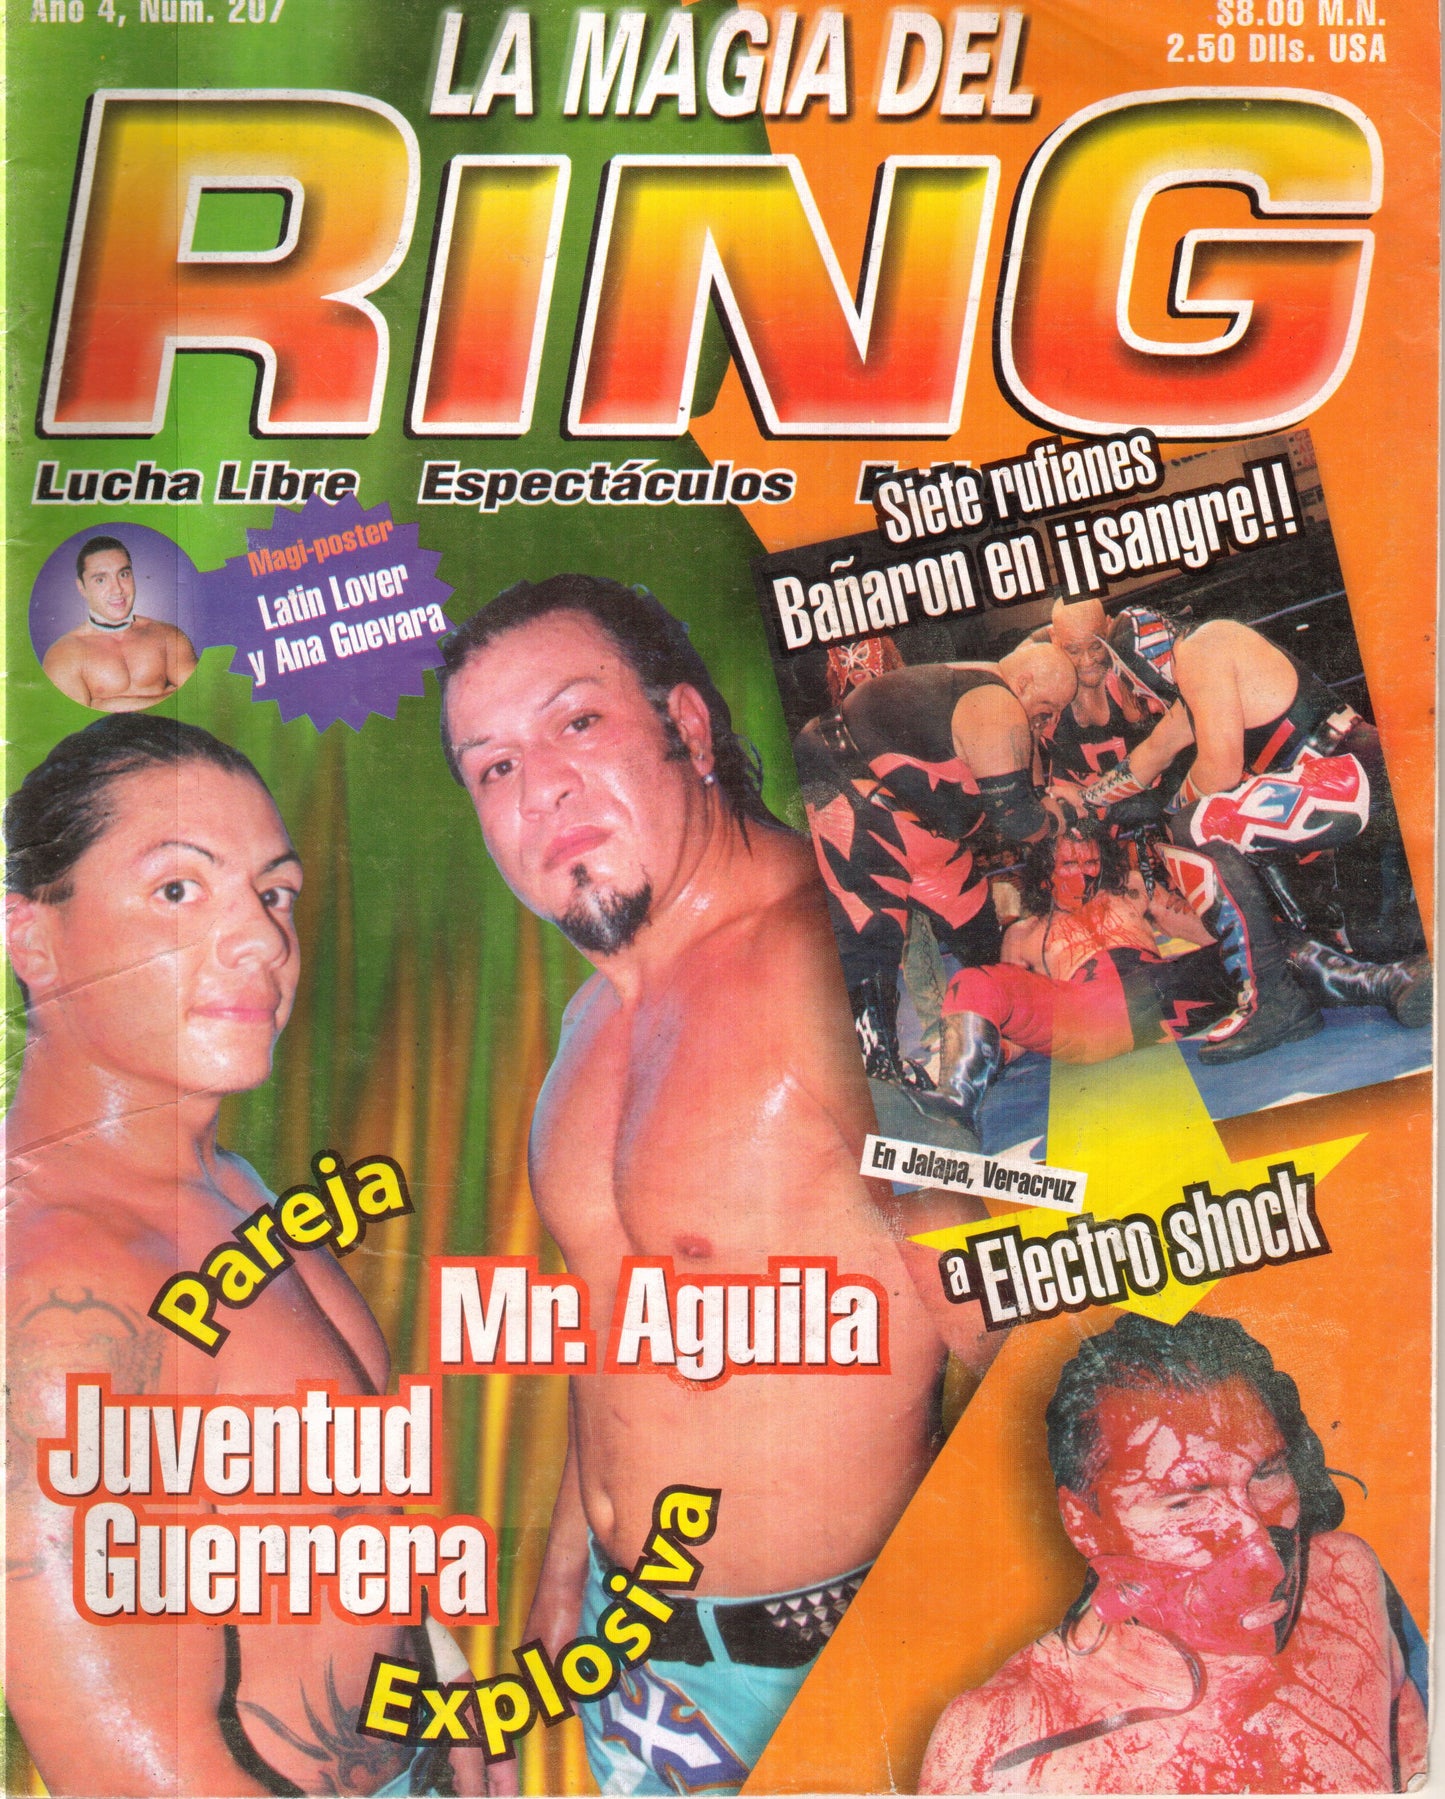 La Magia del Ring Volume 207